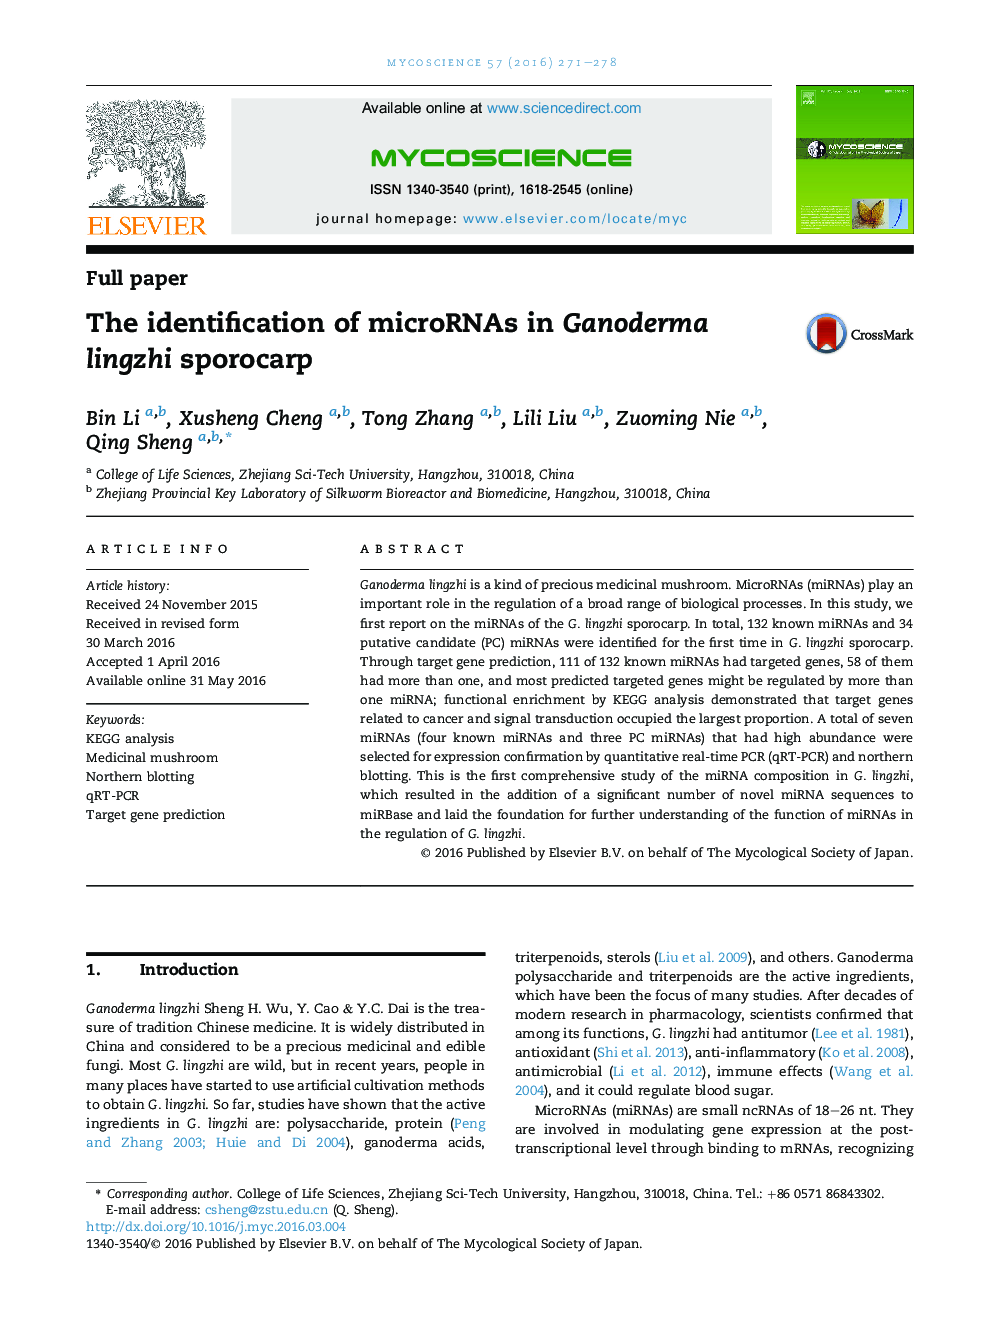 The identification of microRNAs in Ganoderma lingzhi sporocarp